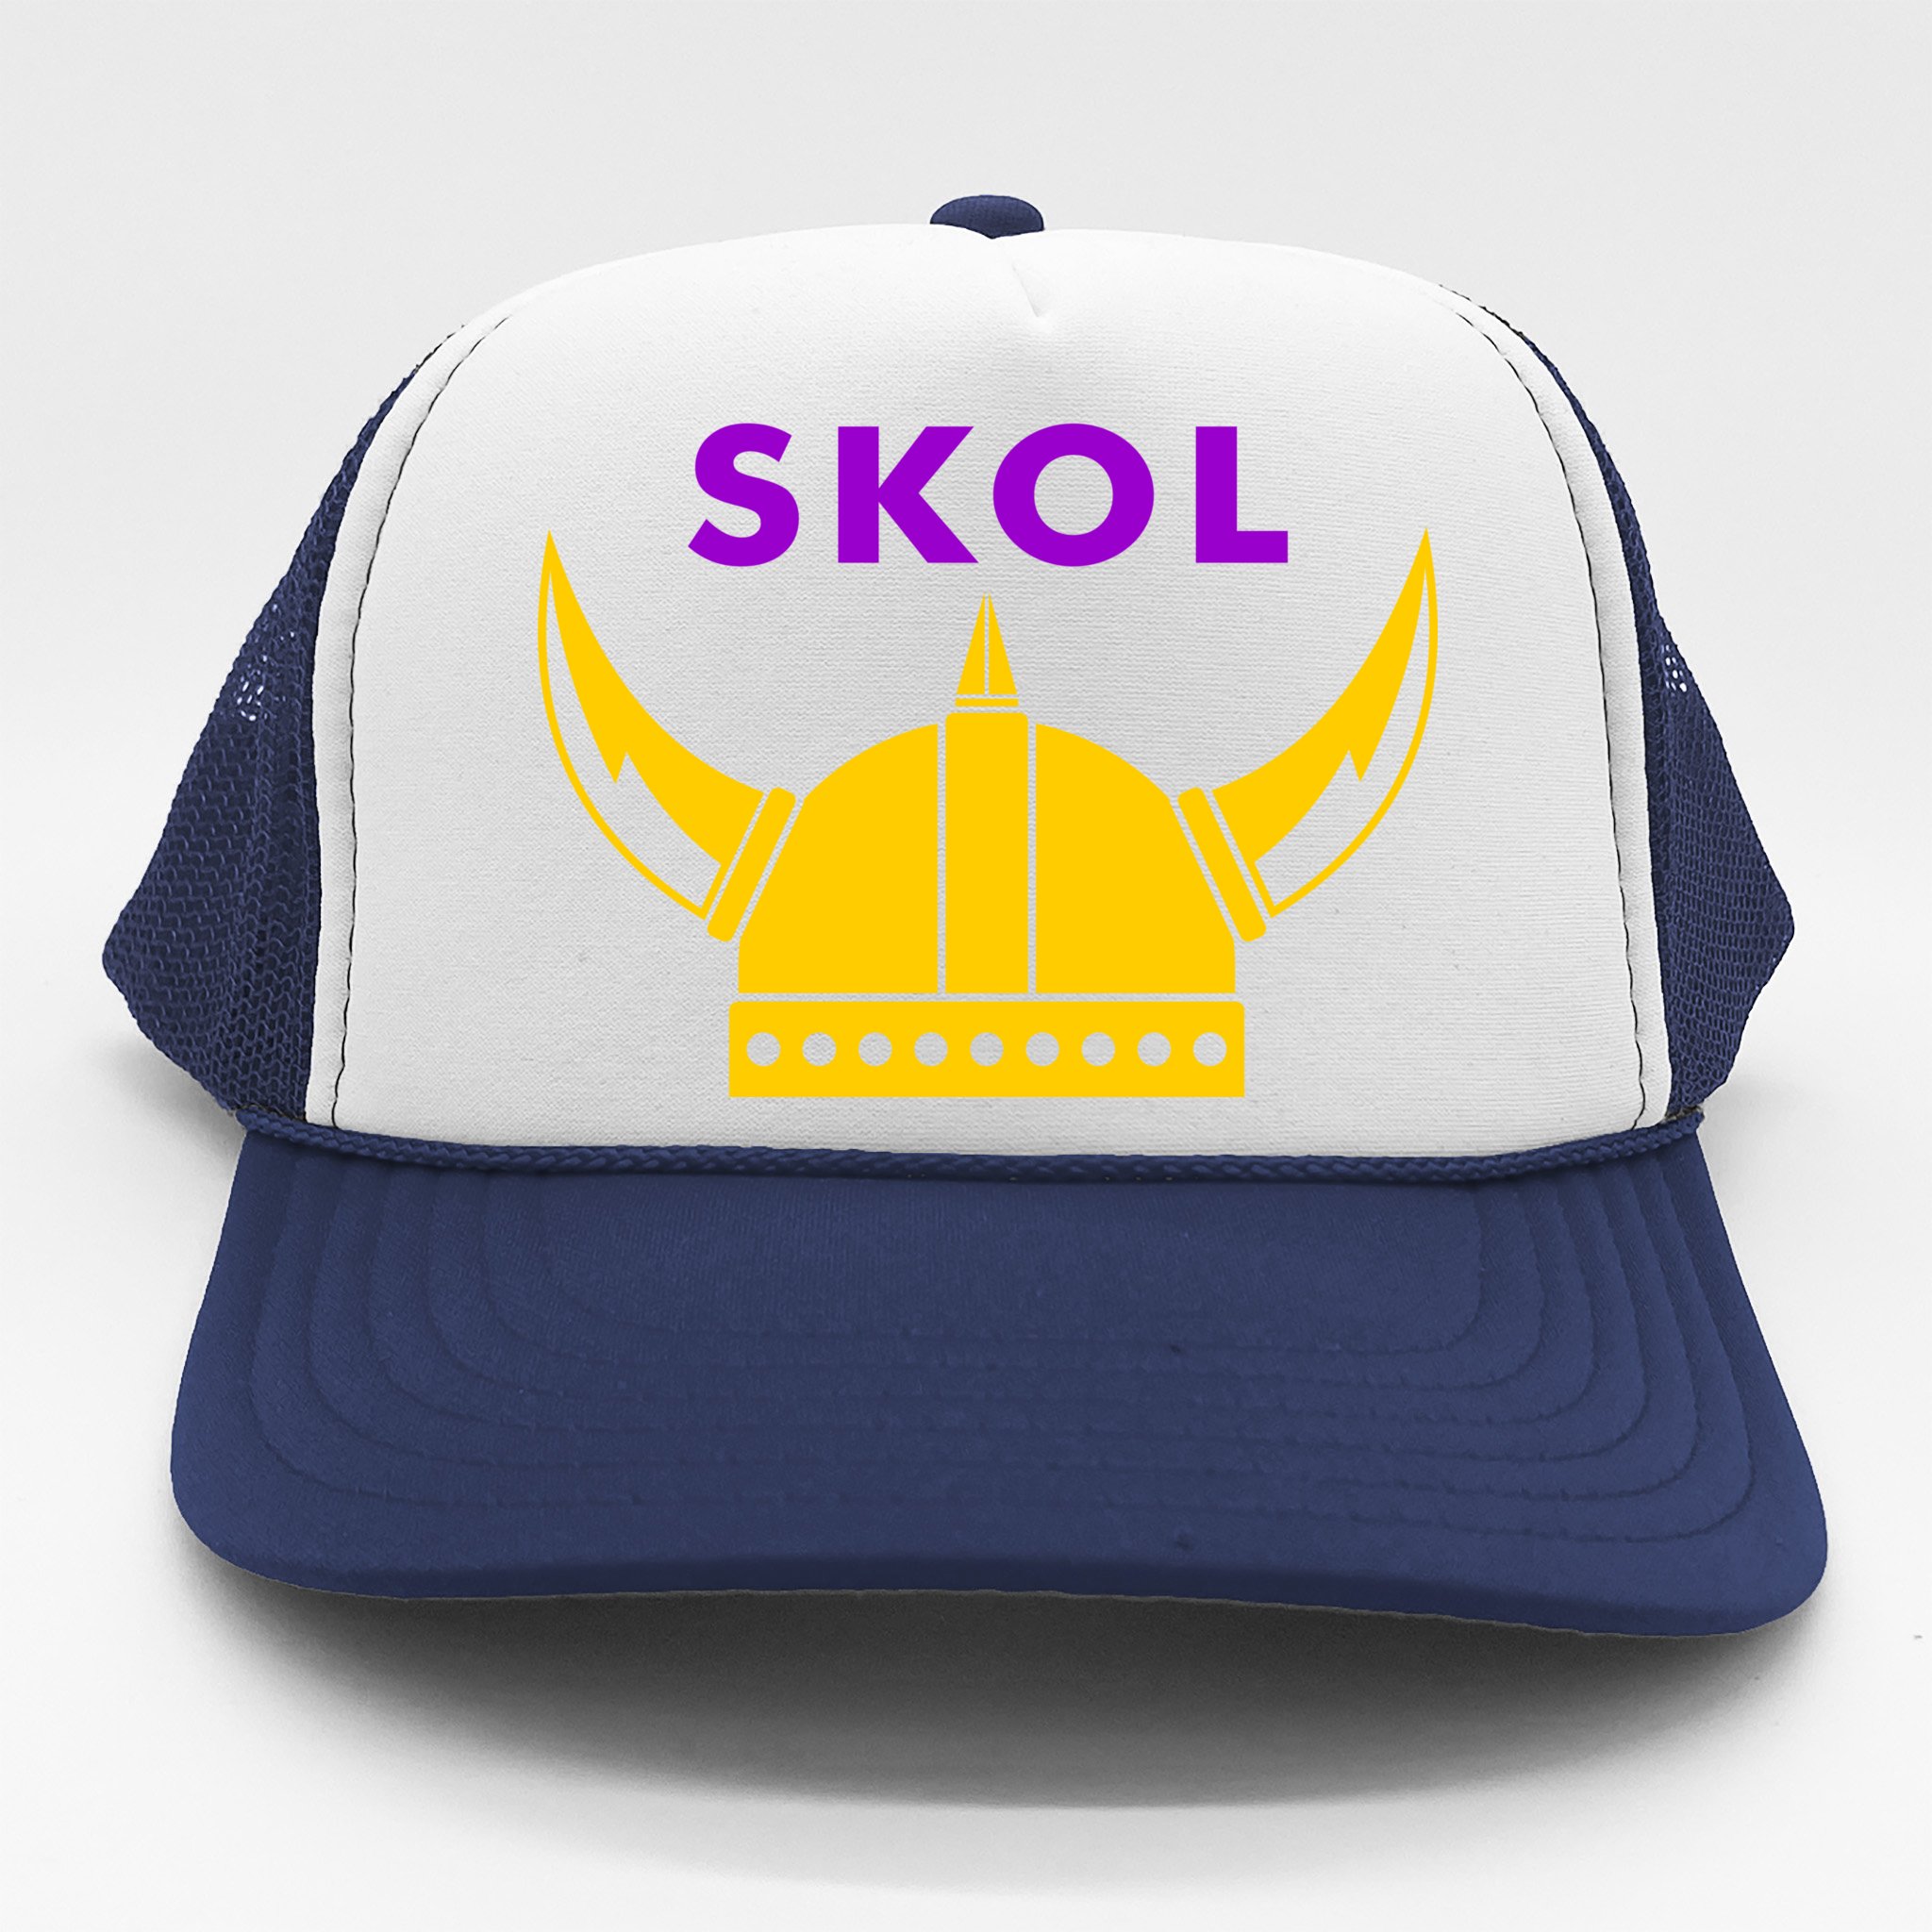 MN Vikings hat - SKOL - football hat - MN Vikings hat